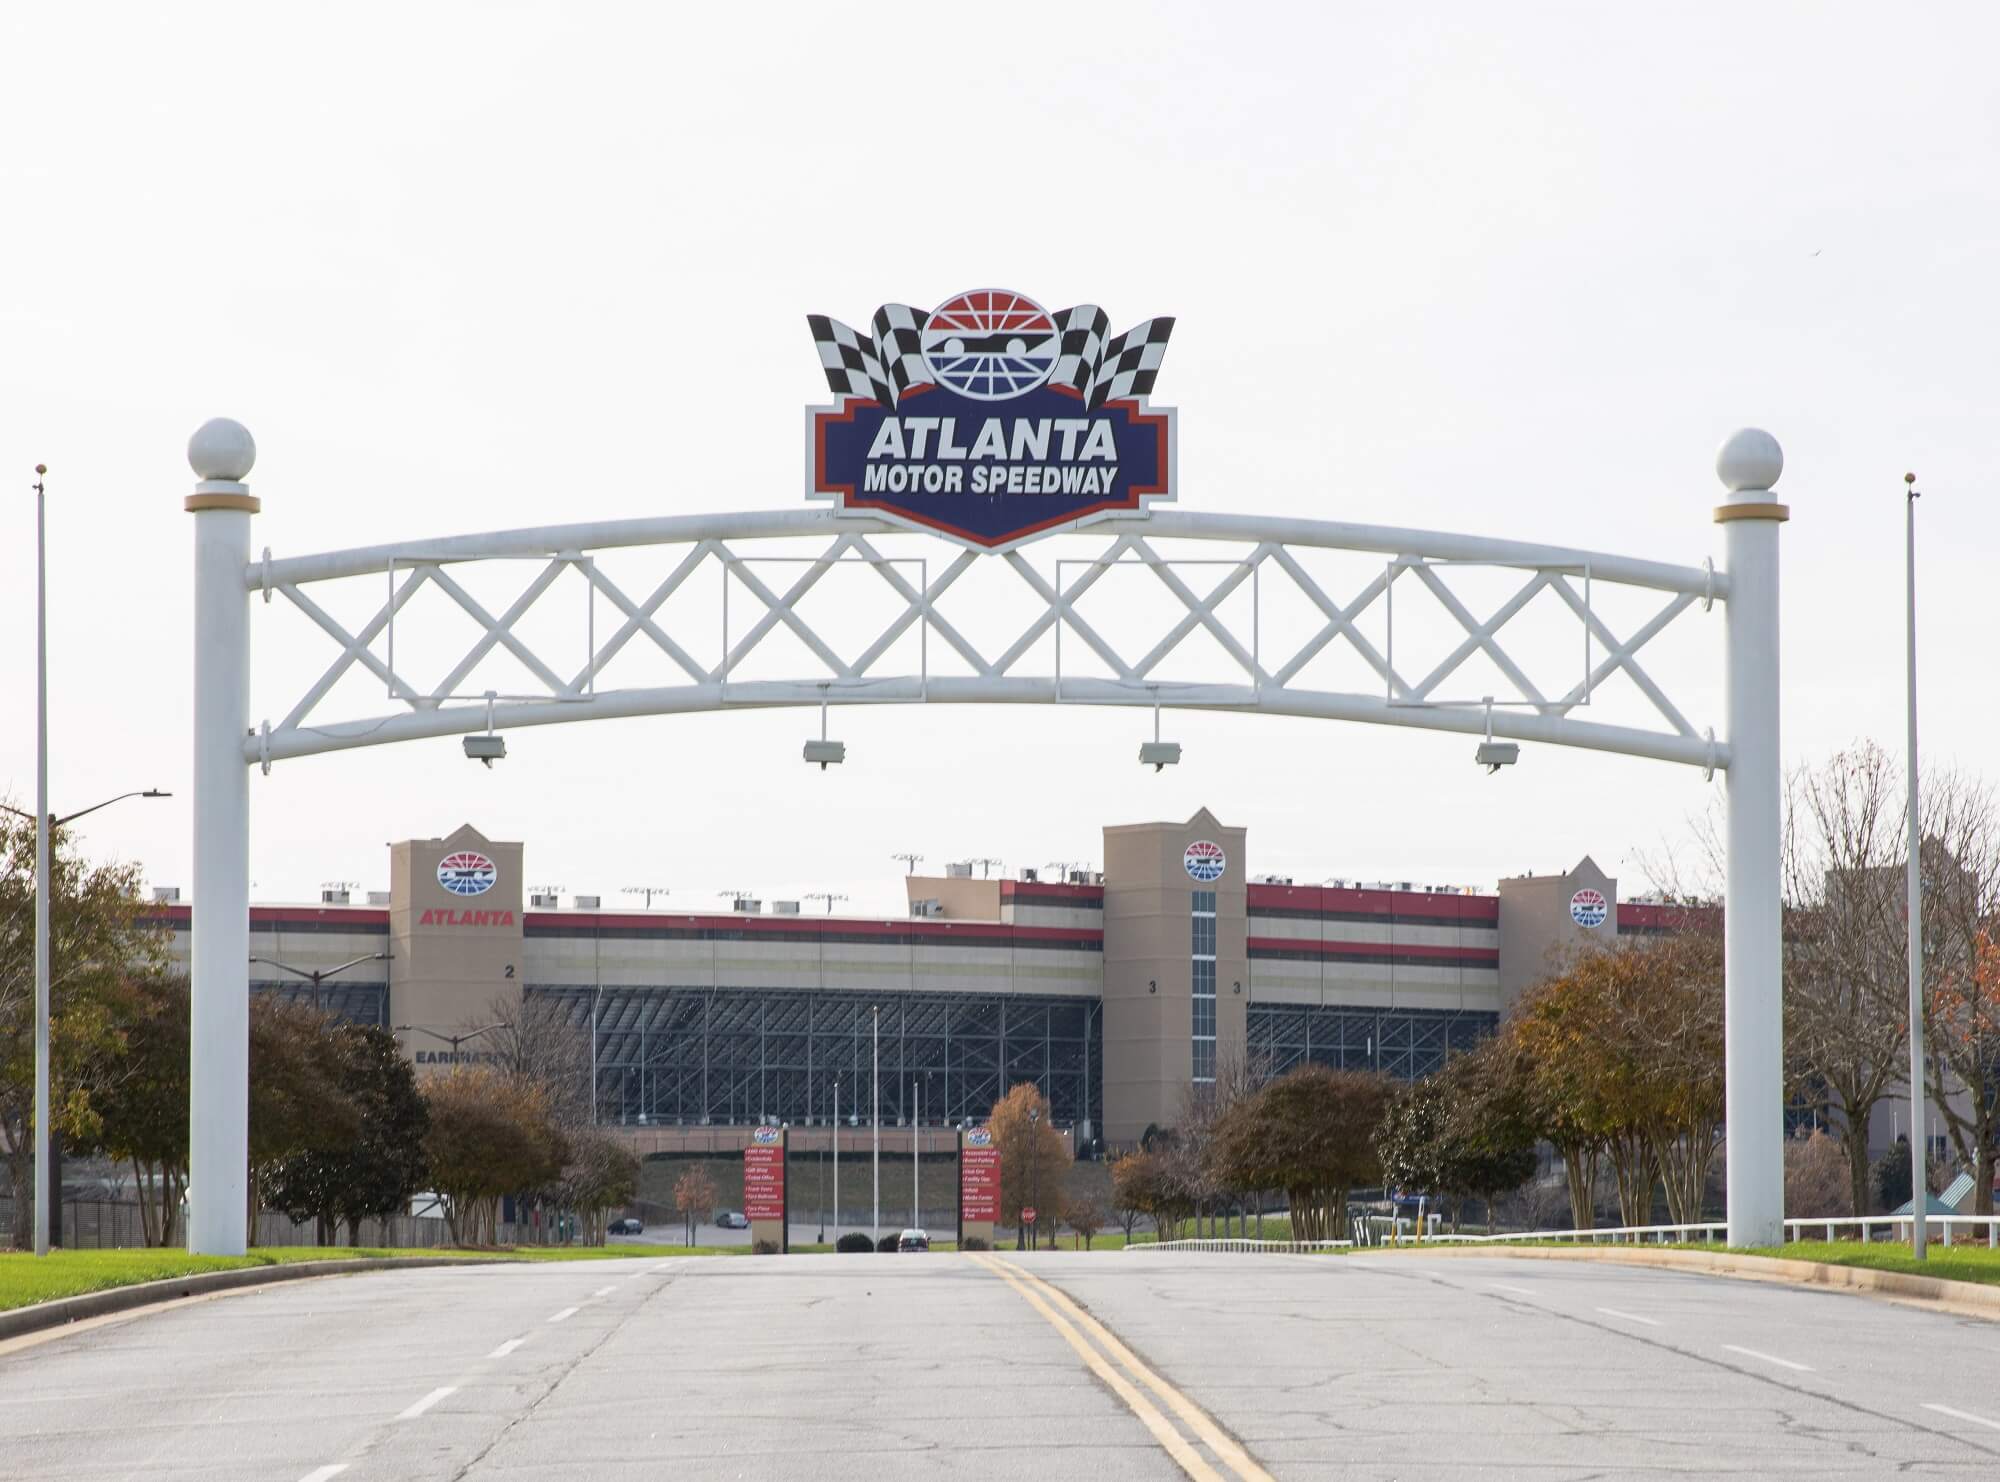 Atlanta Motor Speedway Offers Amenities to Race Fans